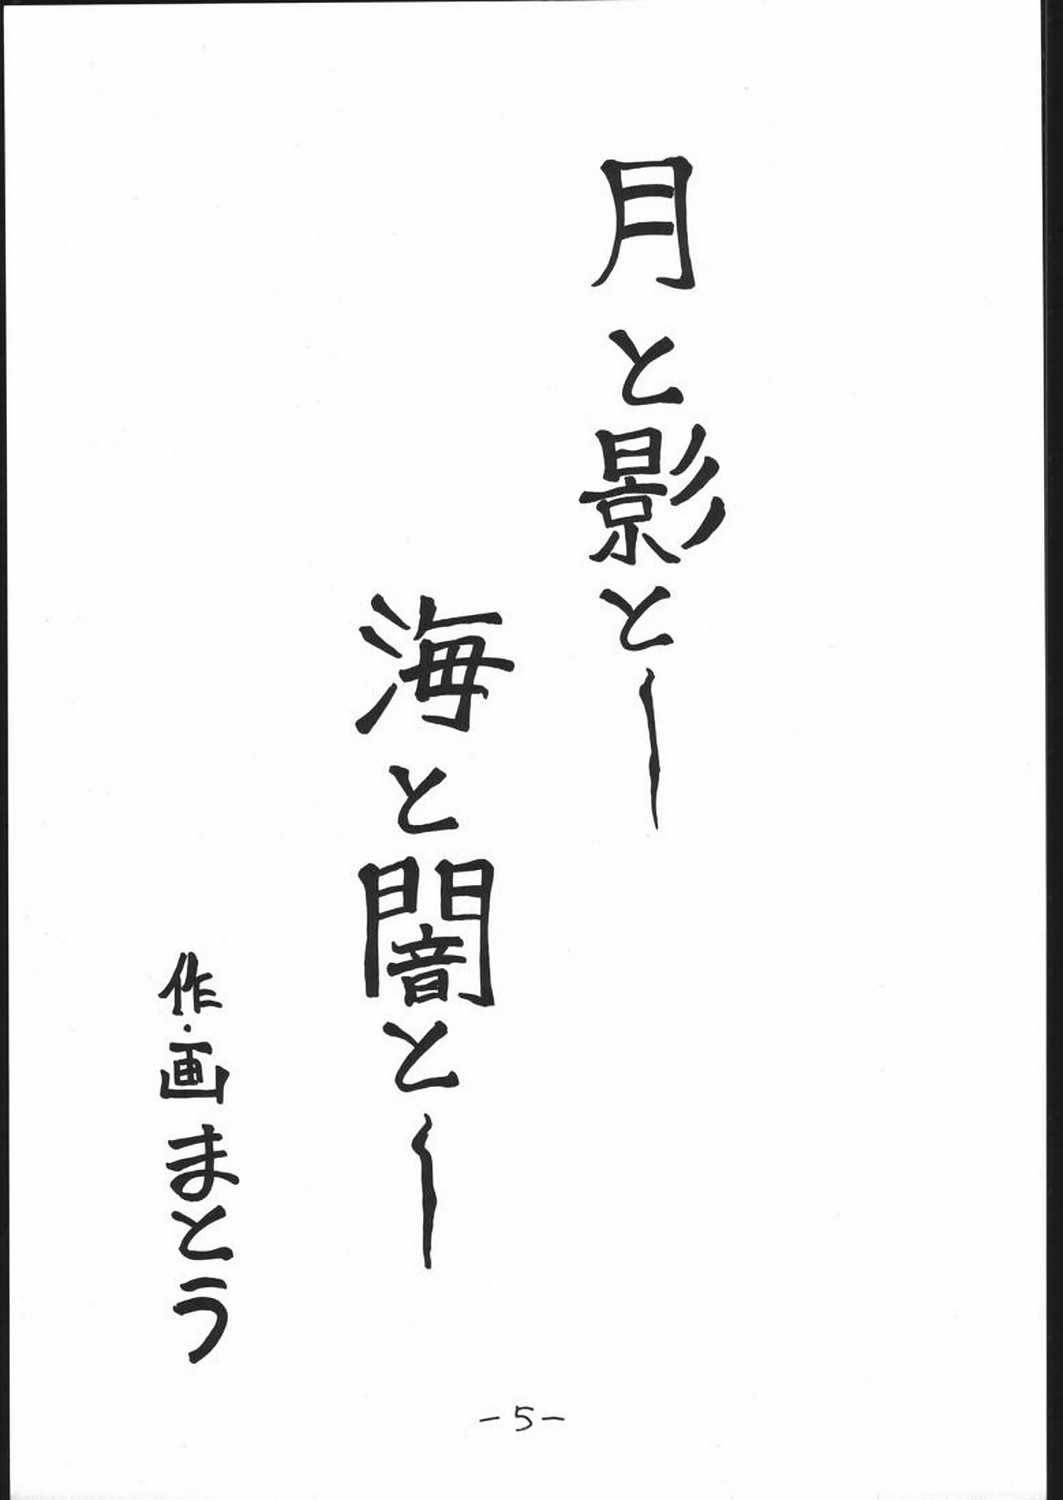 [Majimadou] STRAWBERRY JAM (Samurai Spirits) [眞嶋堂] STRAWBERRY JAM (サムライスピリッツ)